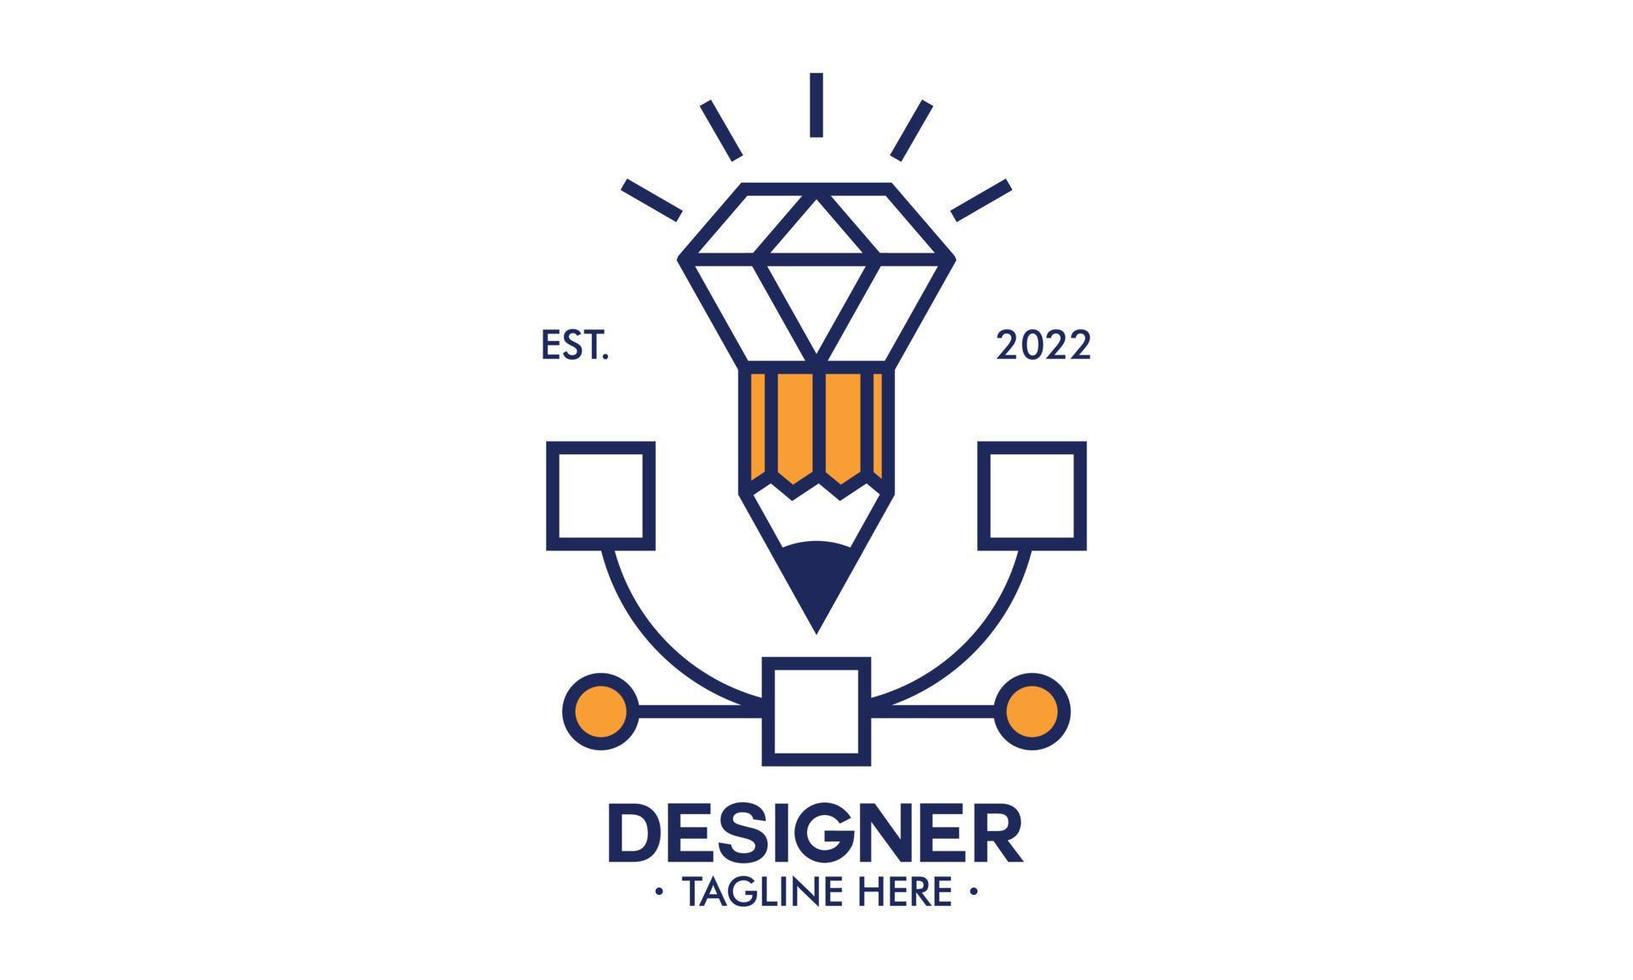 logotipo de la herramienta de estudio de diseño gráfico y diseño web vector